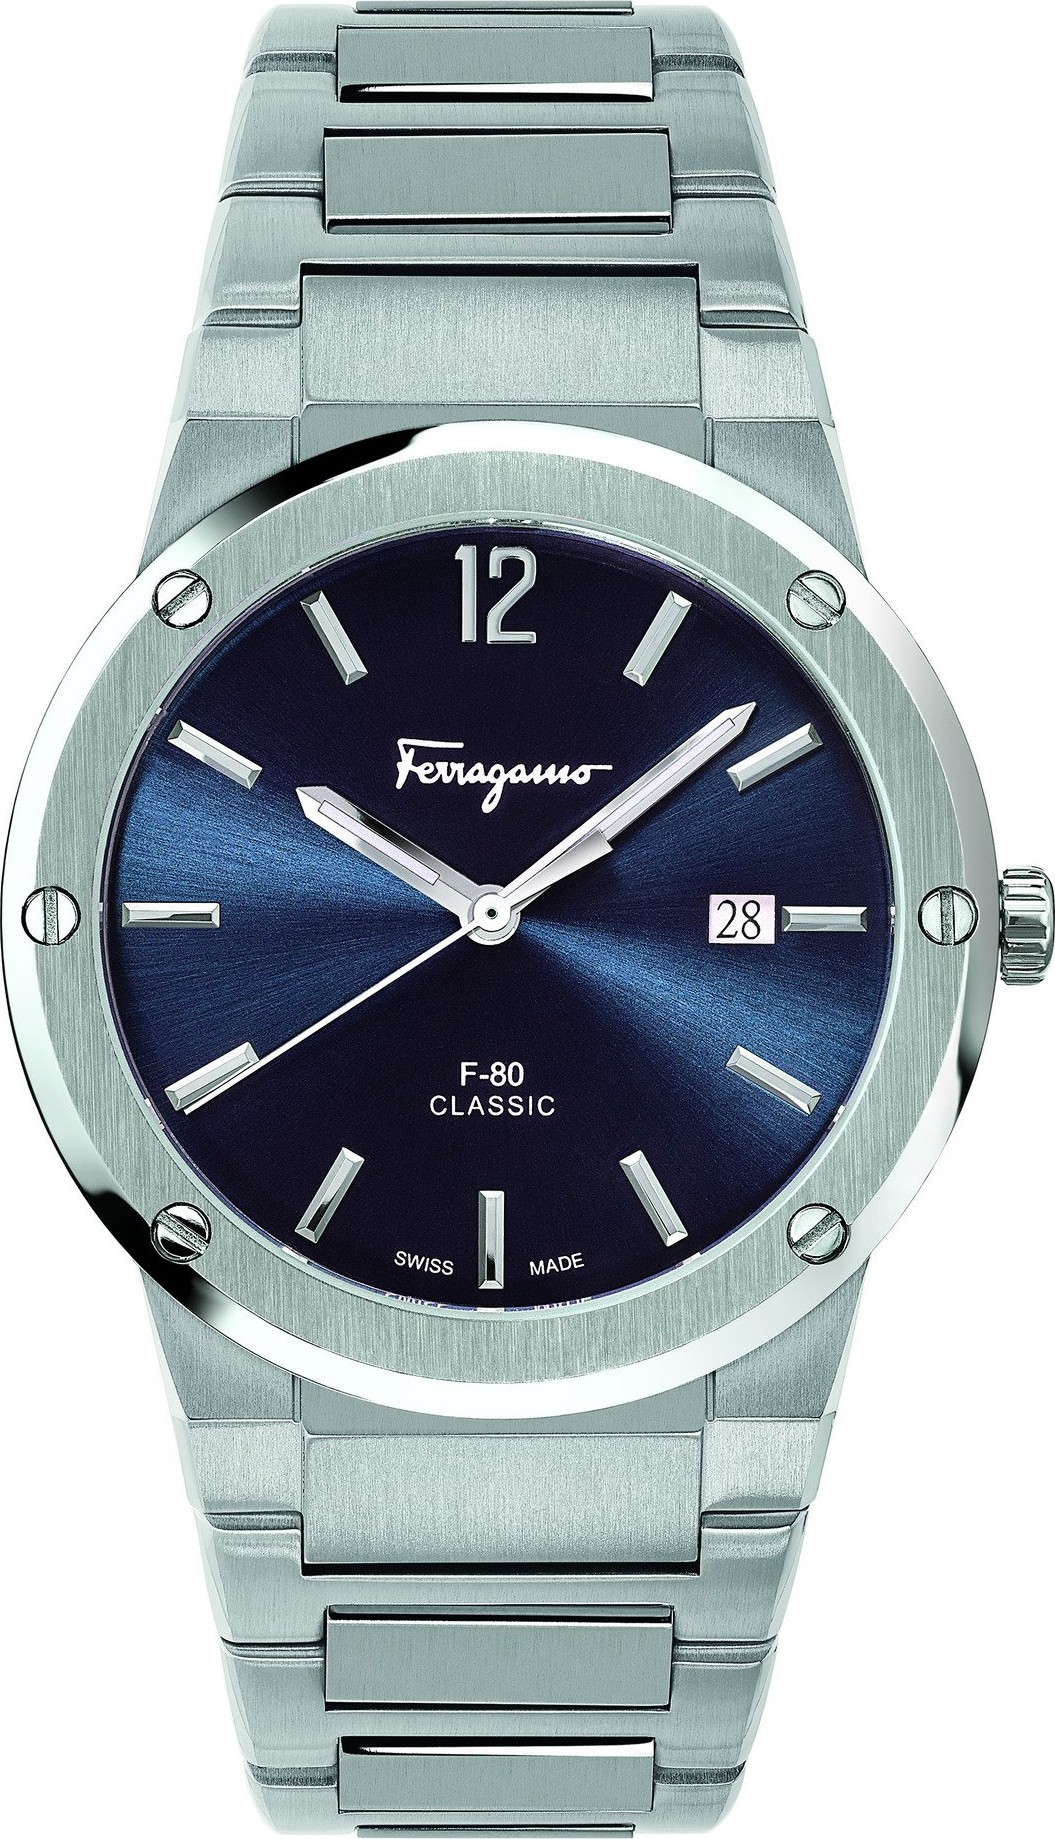 Salvatore Ferragamo sfdt01320 F-80 Watch 41mm